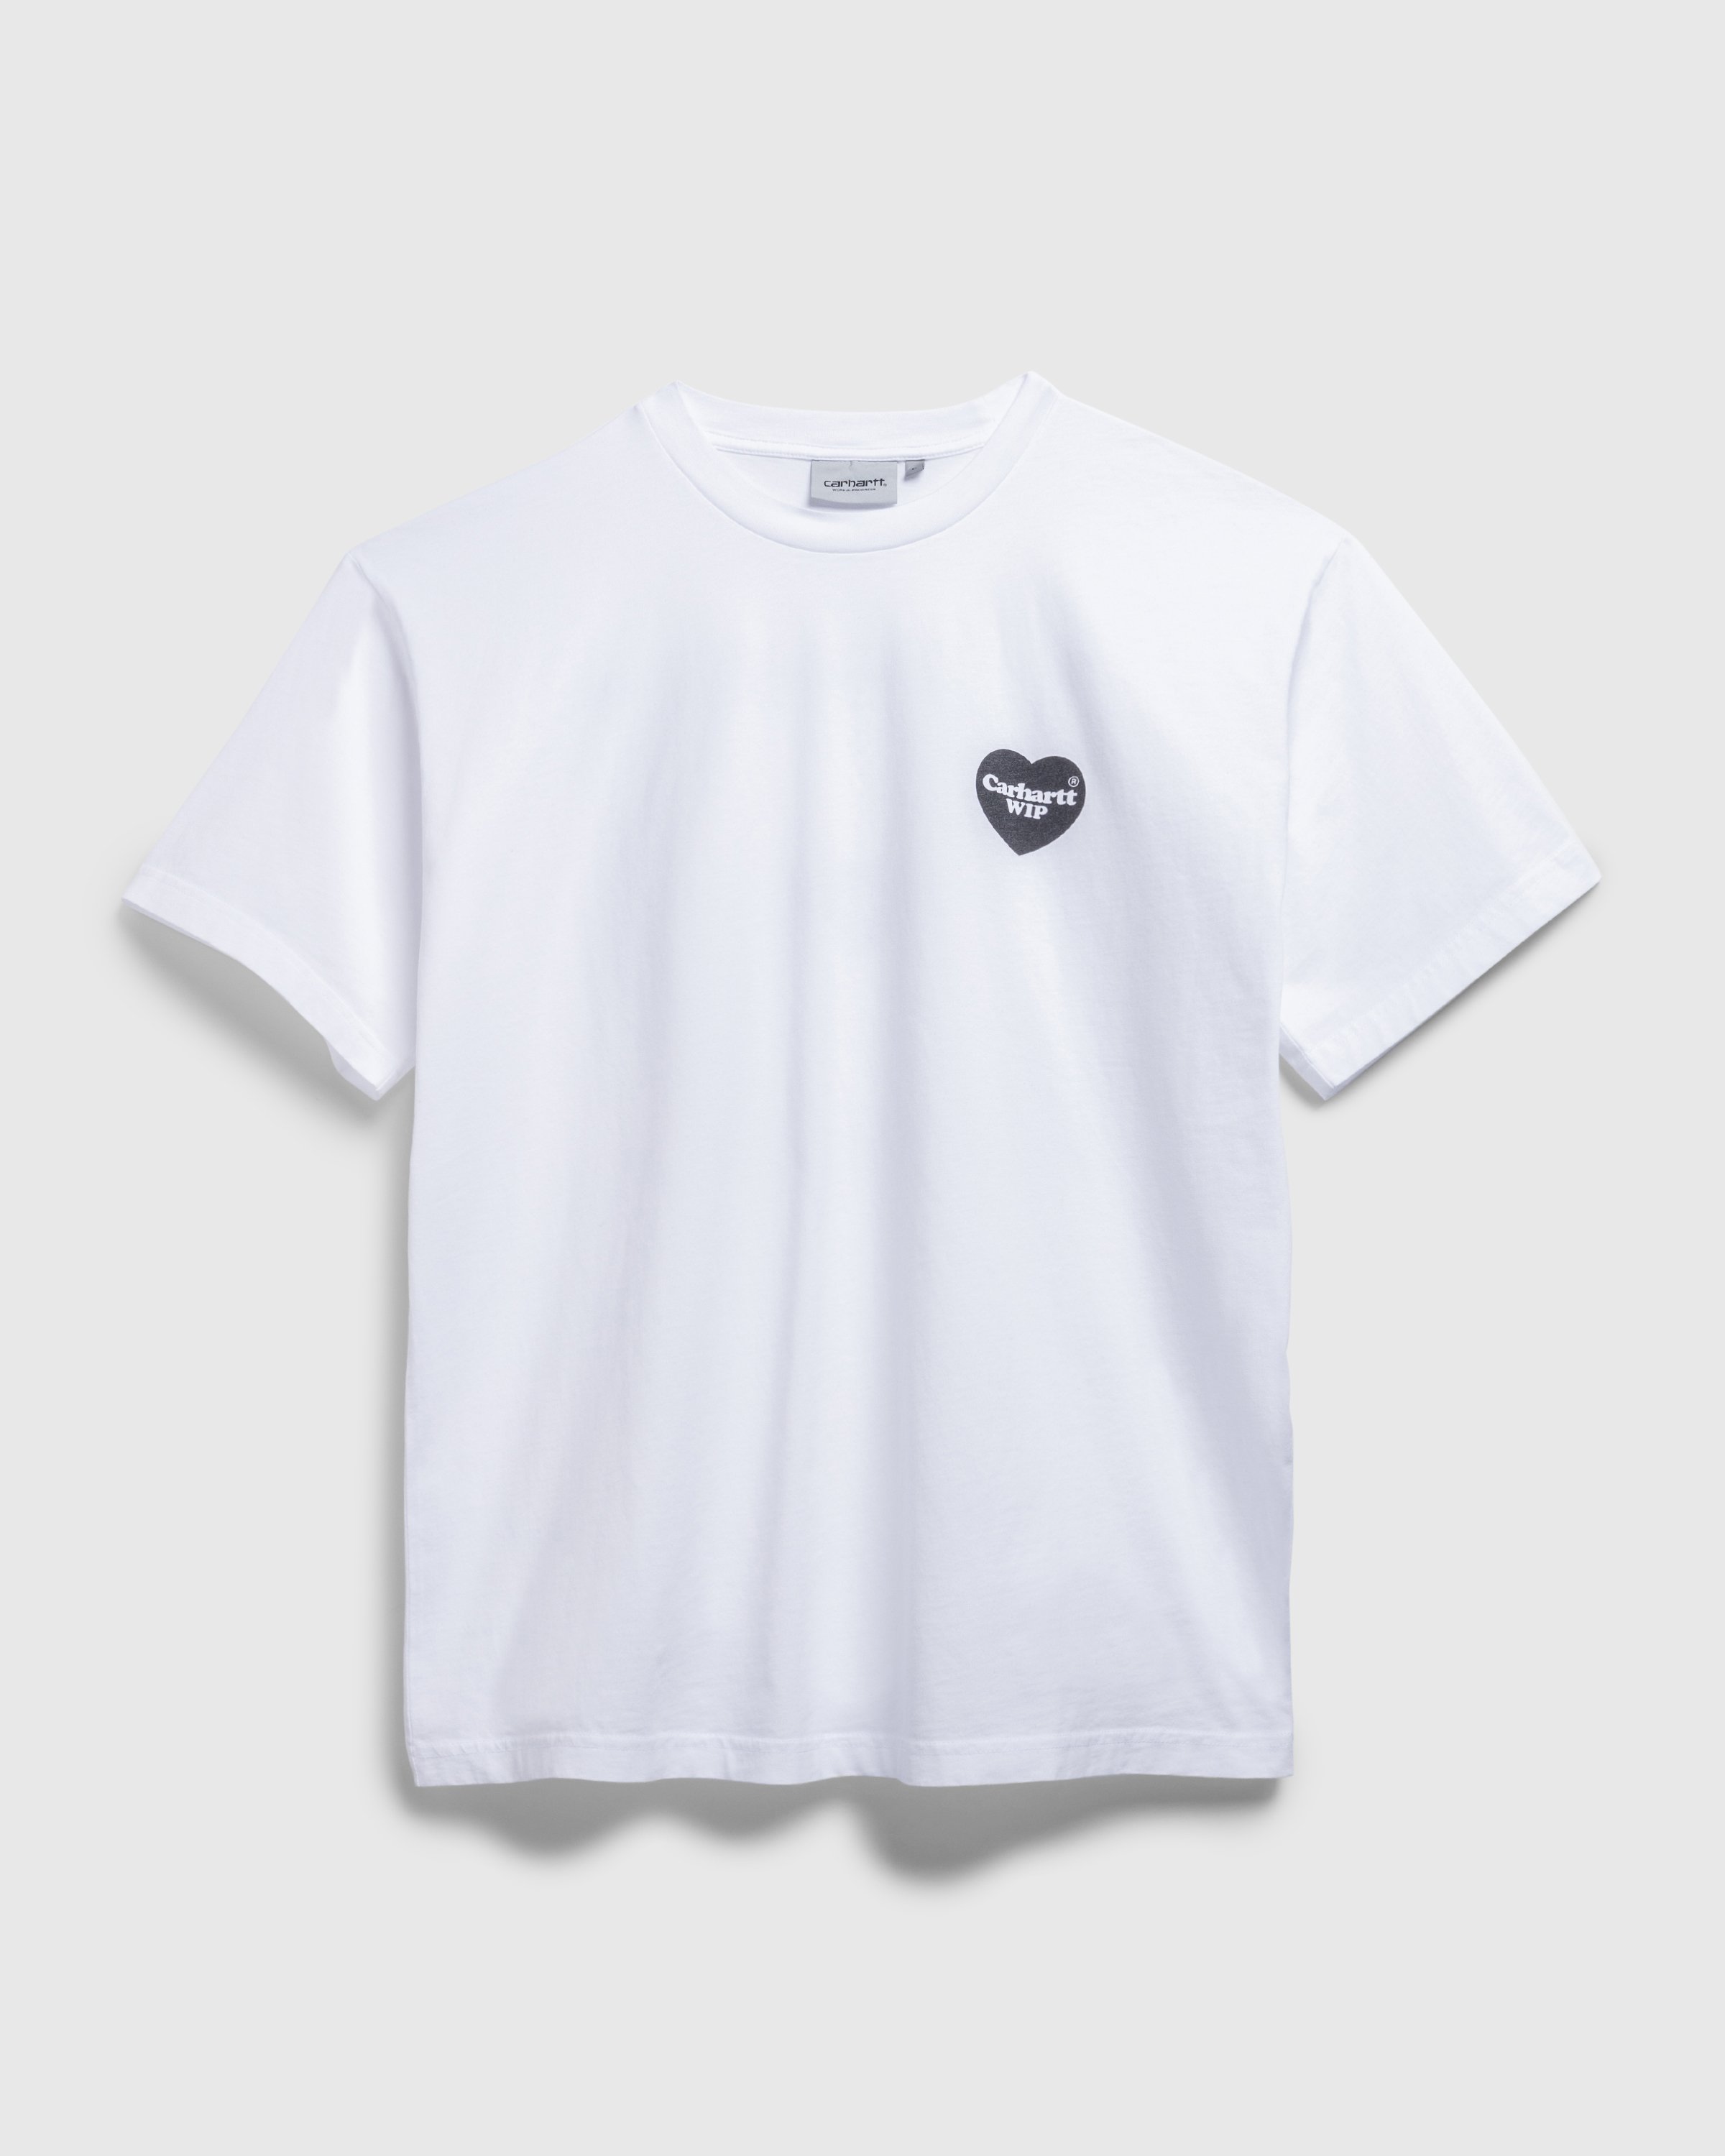 Carhartt WIP - S/S Heart Bandana TShirt White / Black /stone washed - Clothing - White - Image 1